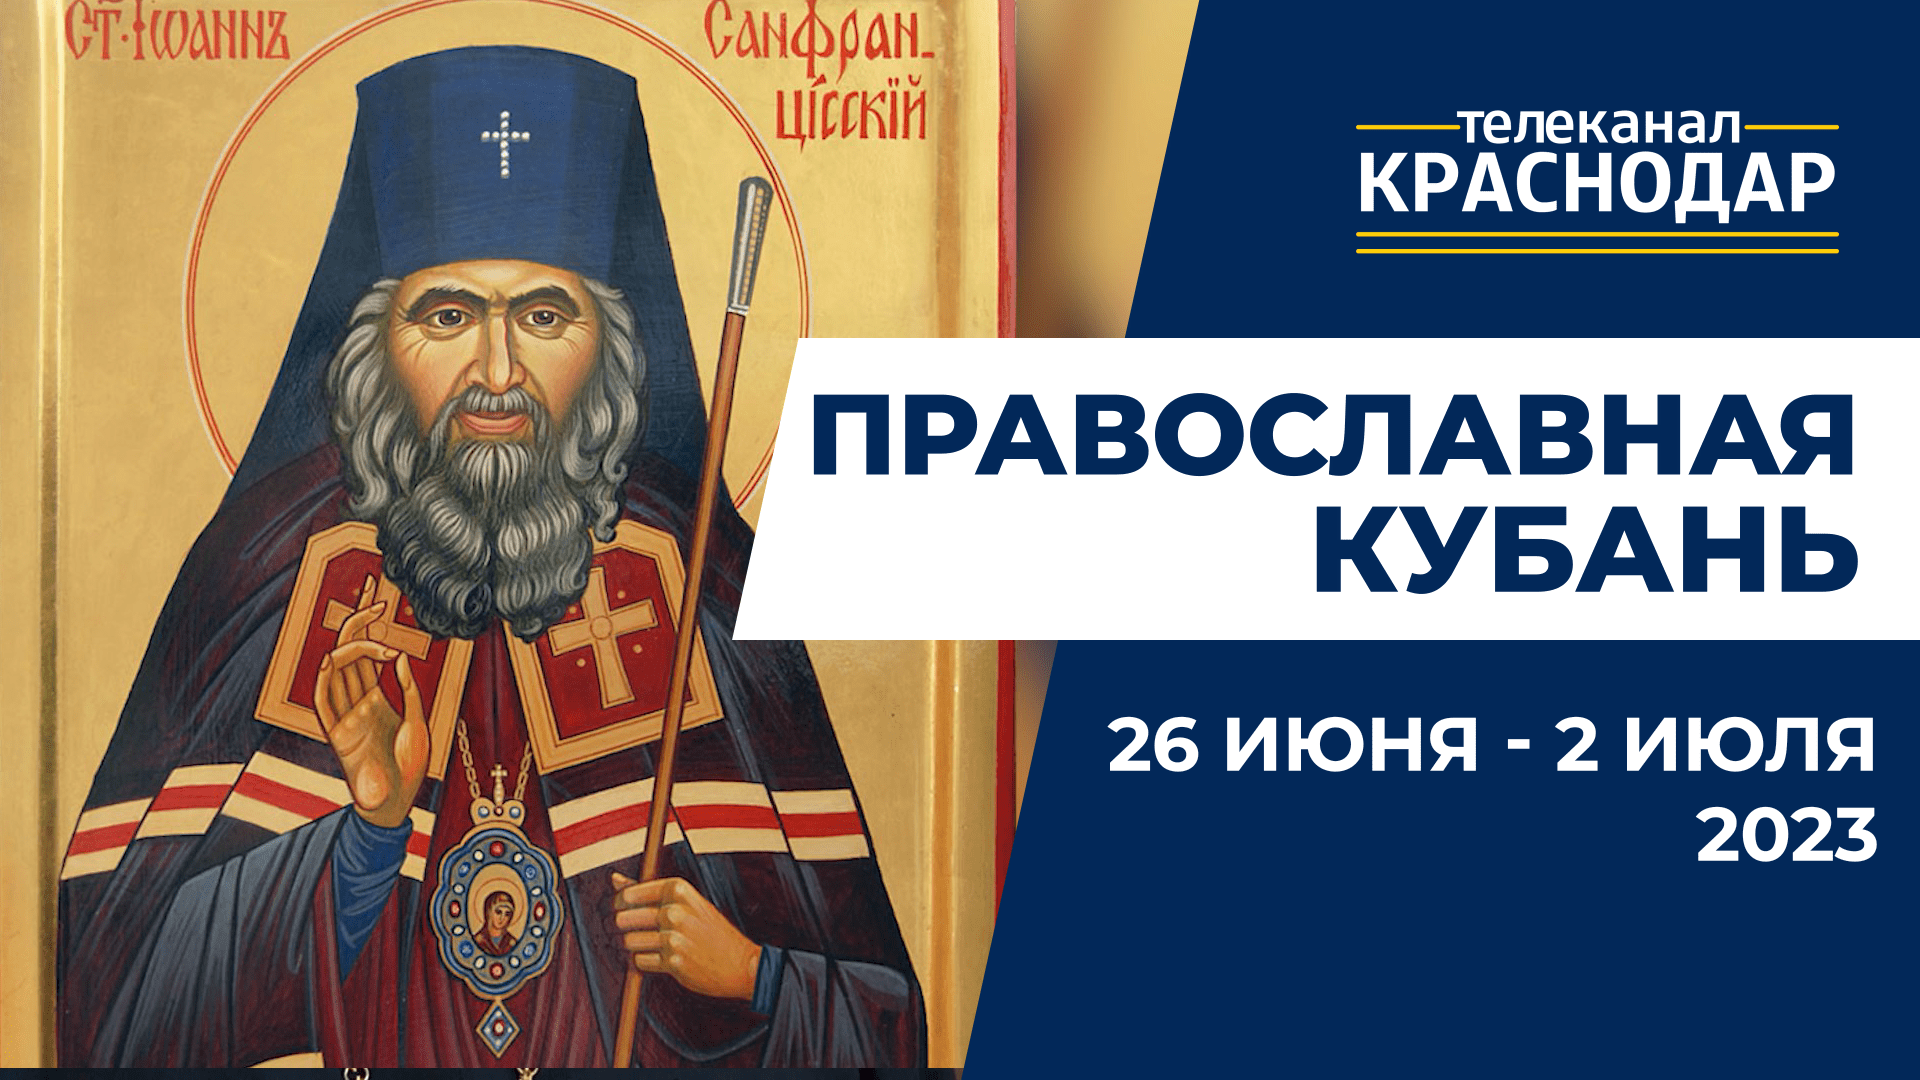 «Православная Кубань»: какие церковные праздники отмечают с 26 июня по 2 июля?